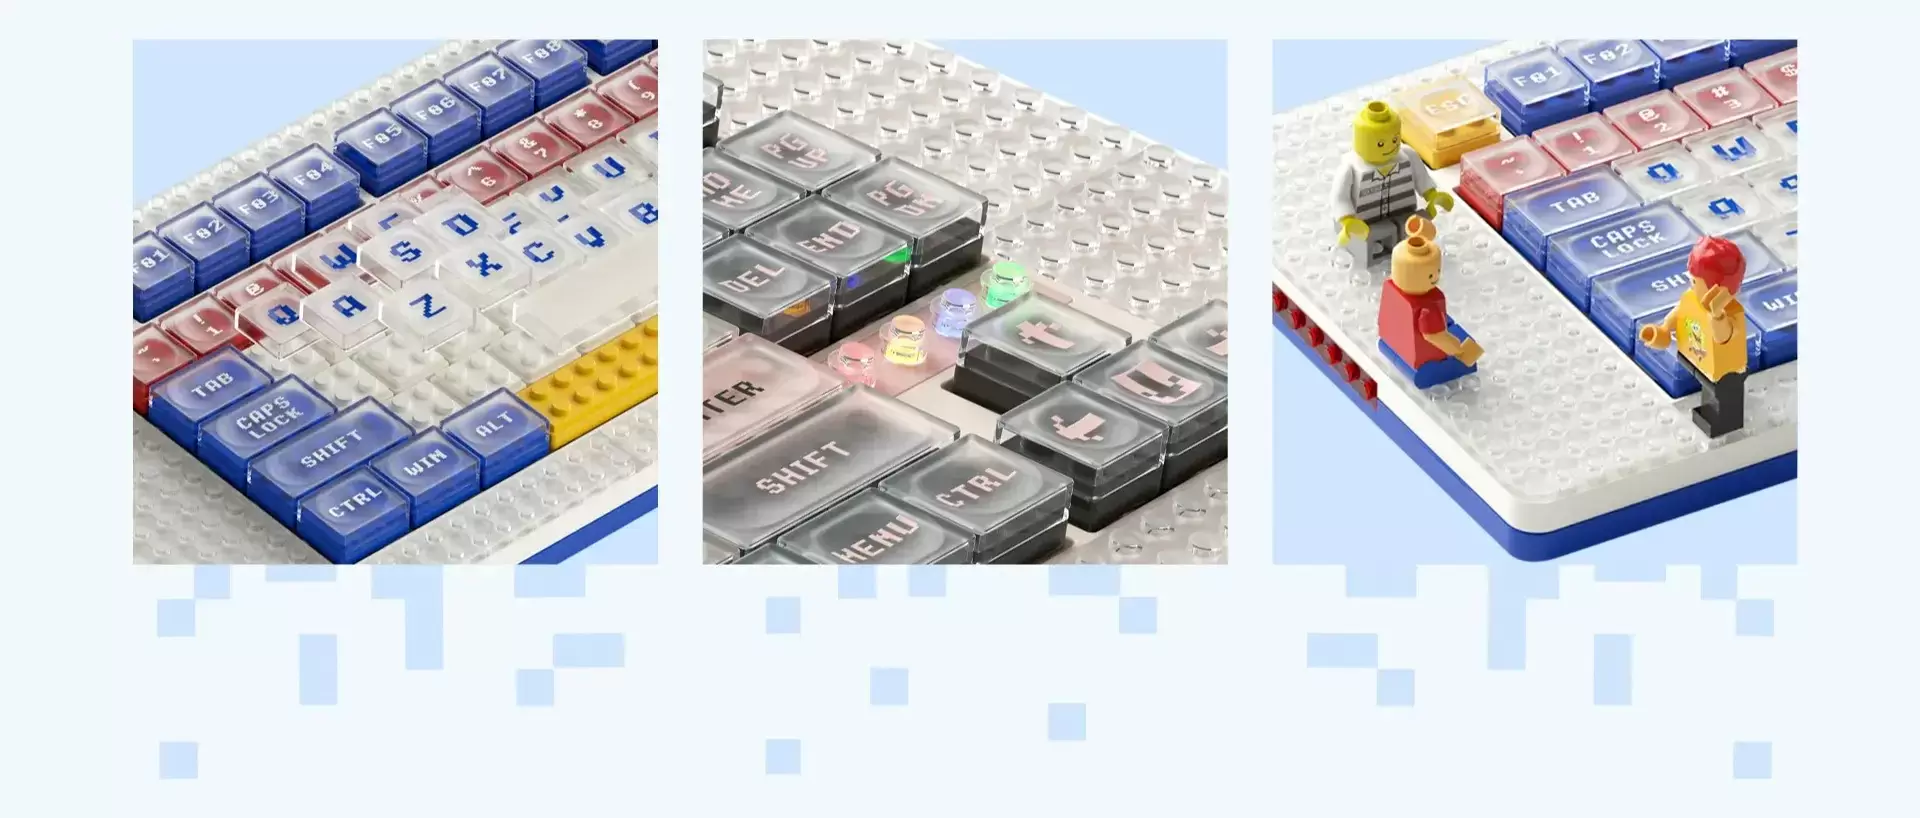 lego keyboard bricks